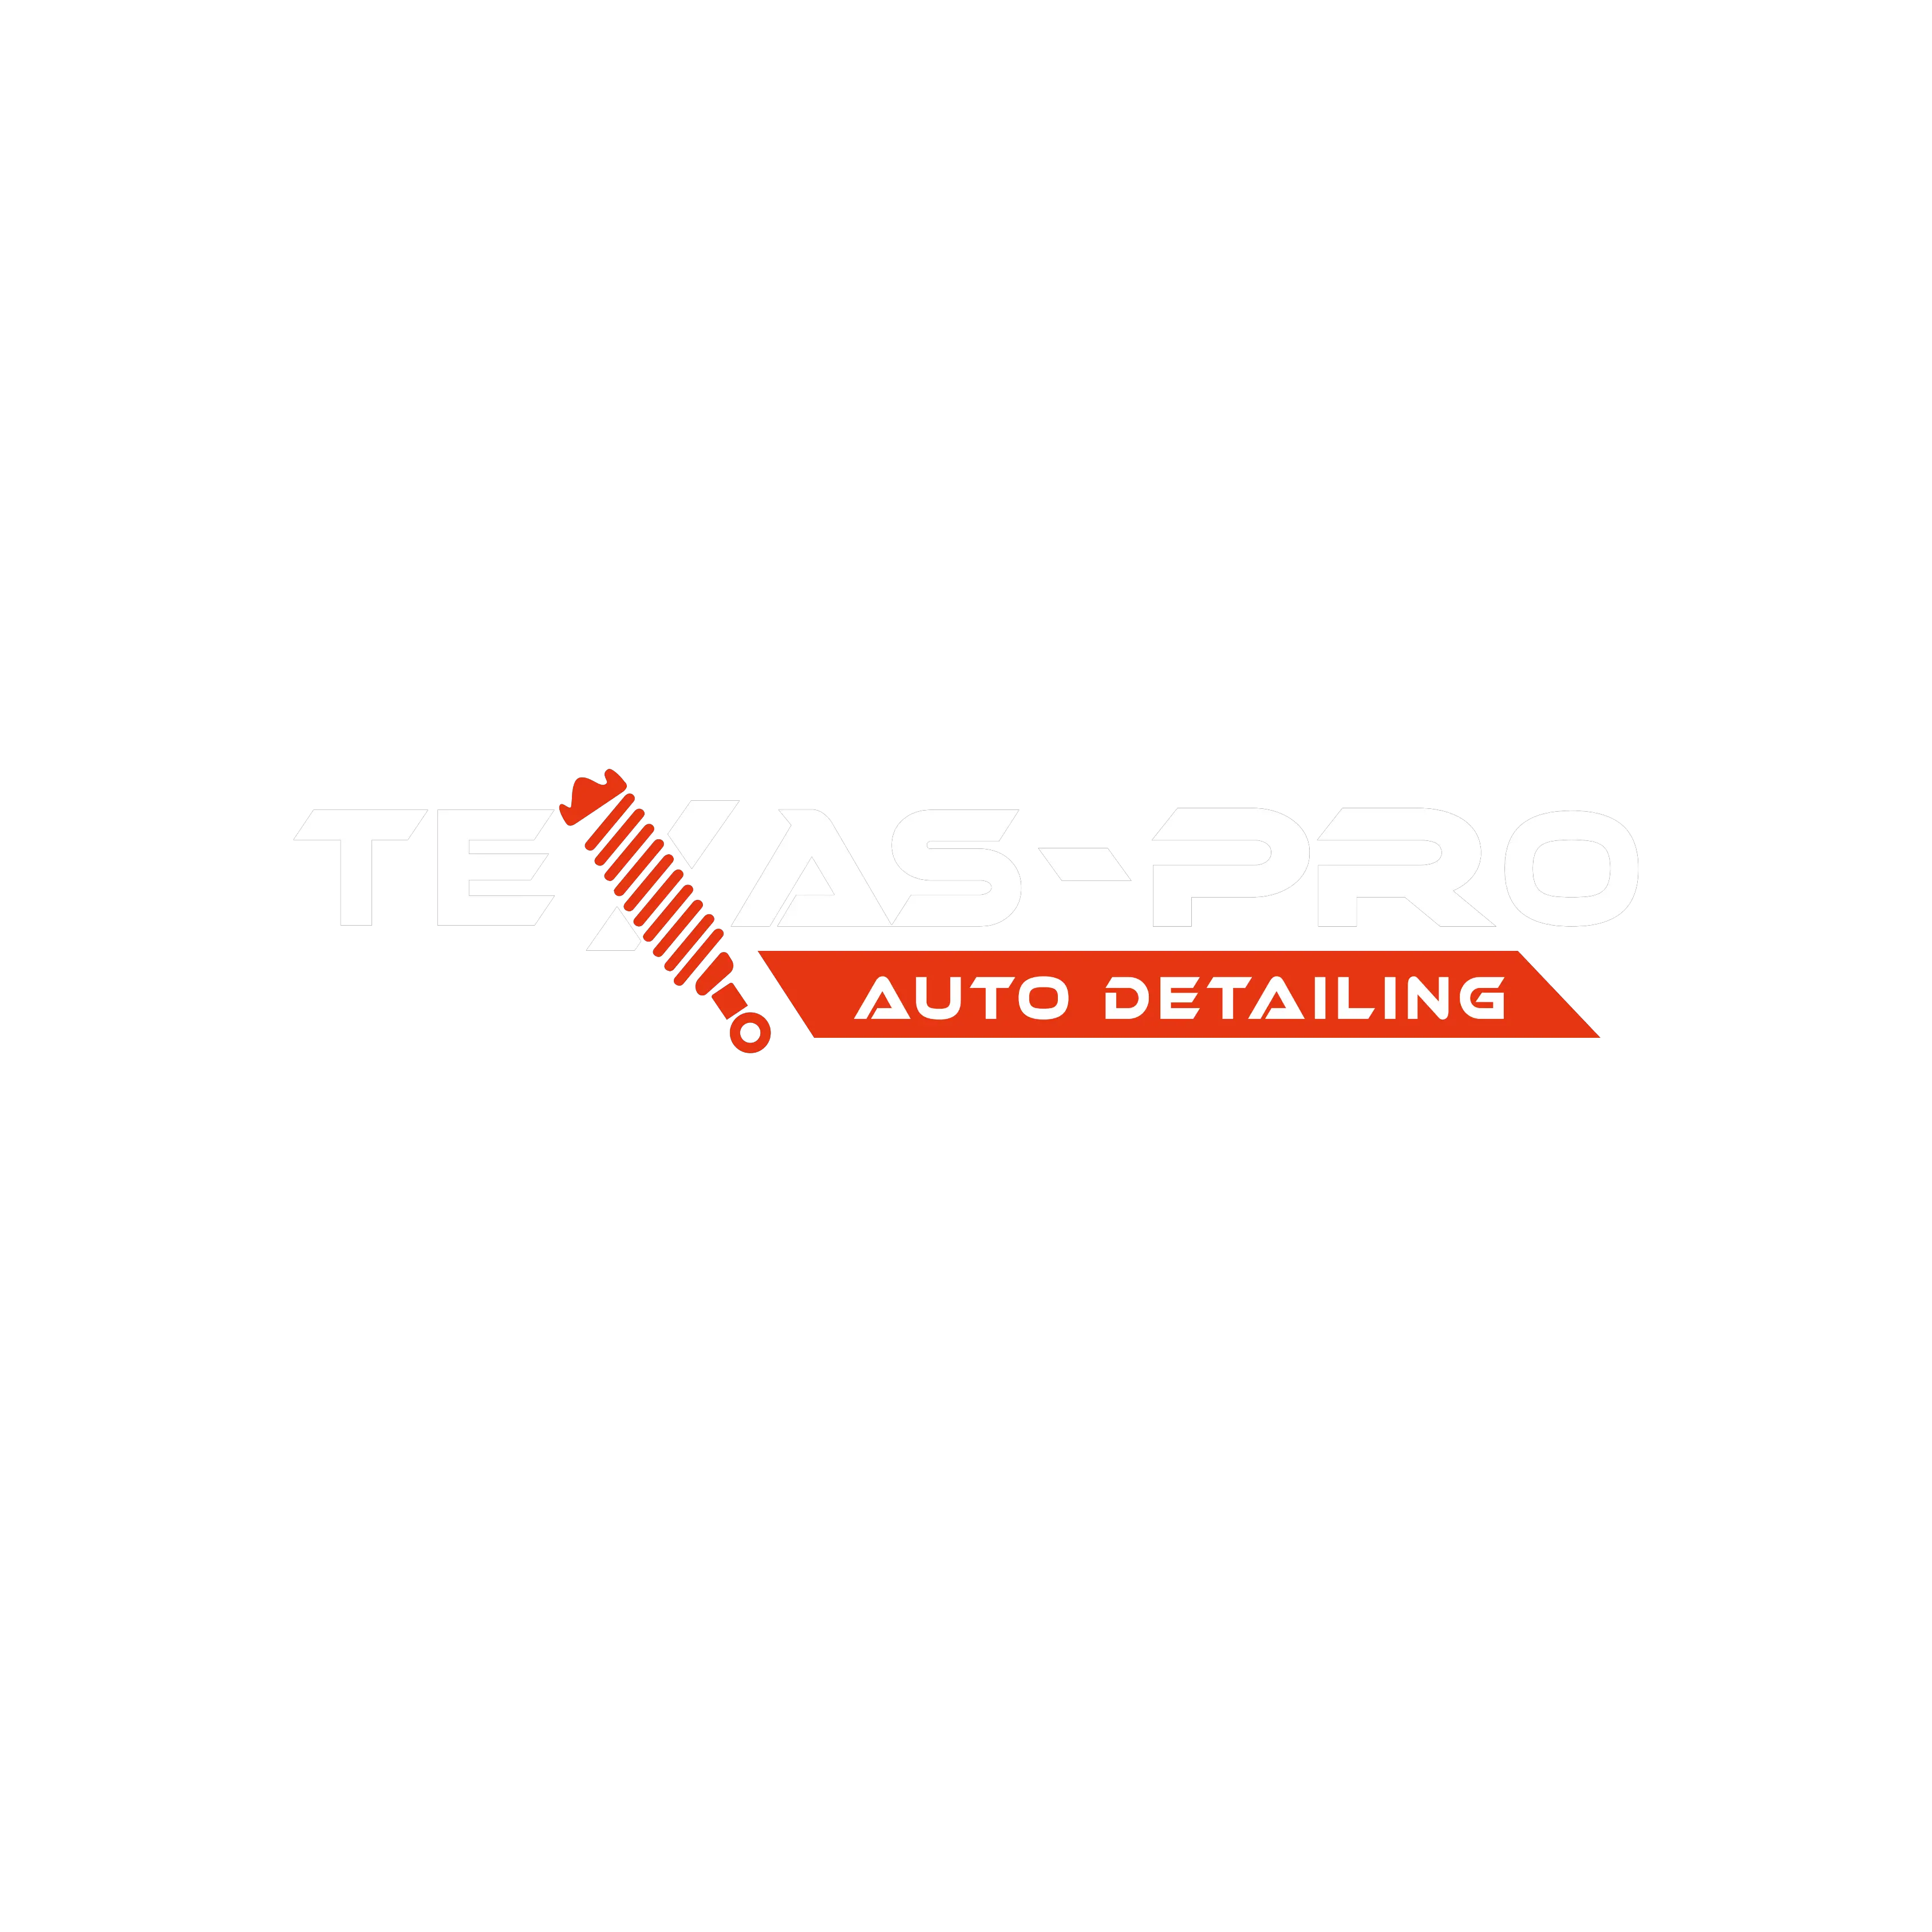 Texas Pro Auto Detailing